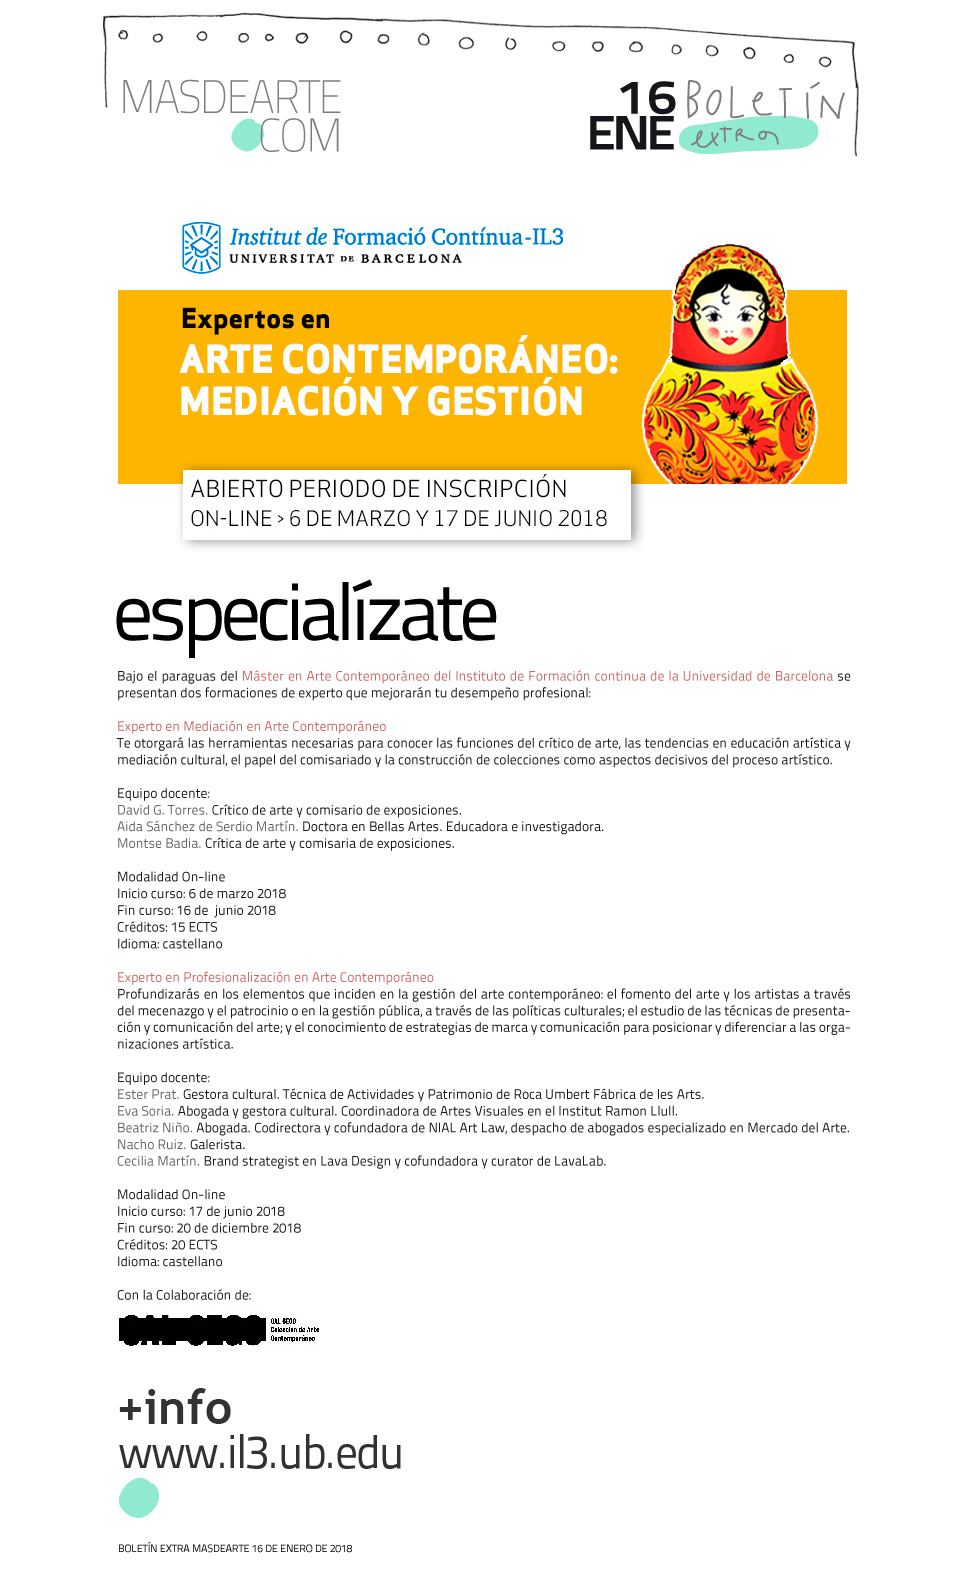 Experto en Mediación en Arte Contemporáneo. Institut de Formació Contínua-IL3. Universitat de Barcelona